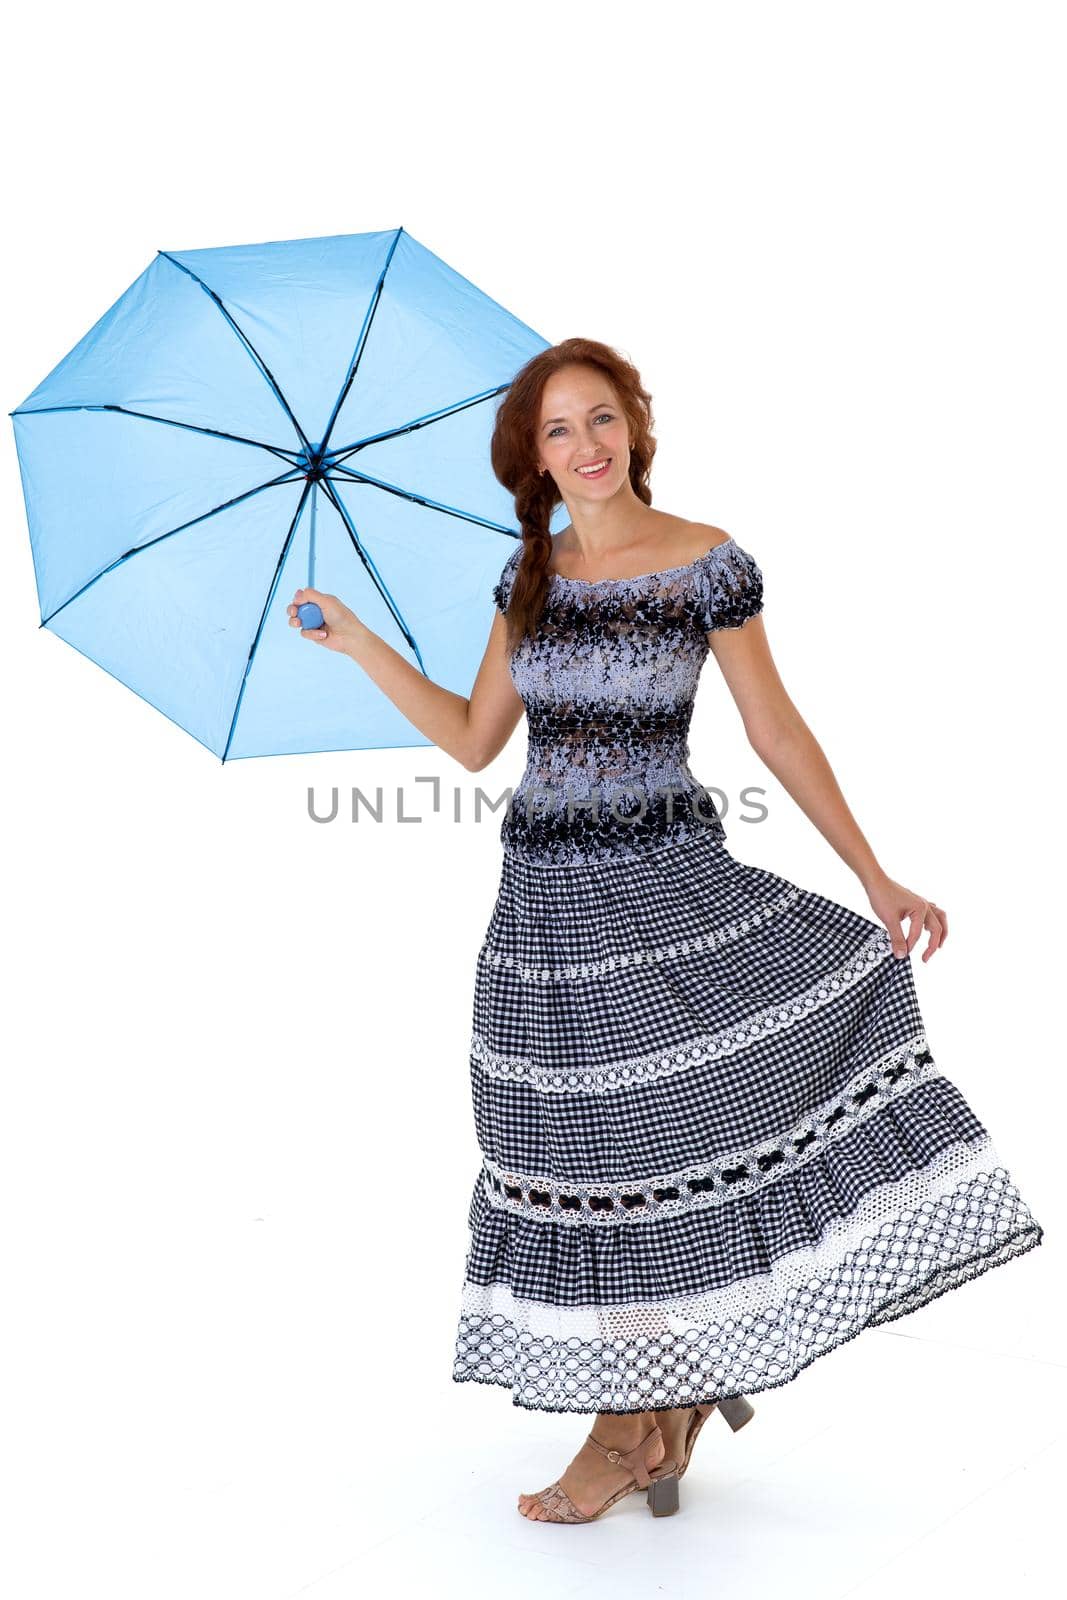 Happy girl holding umbrella above her head by kolesnikov_studio